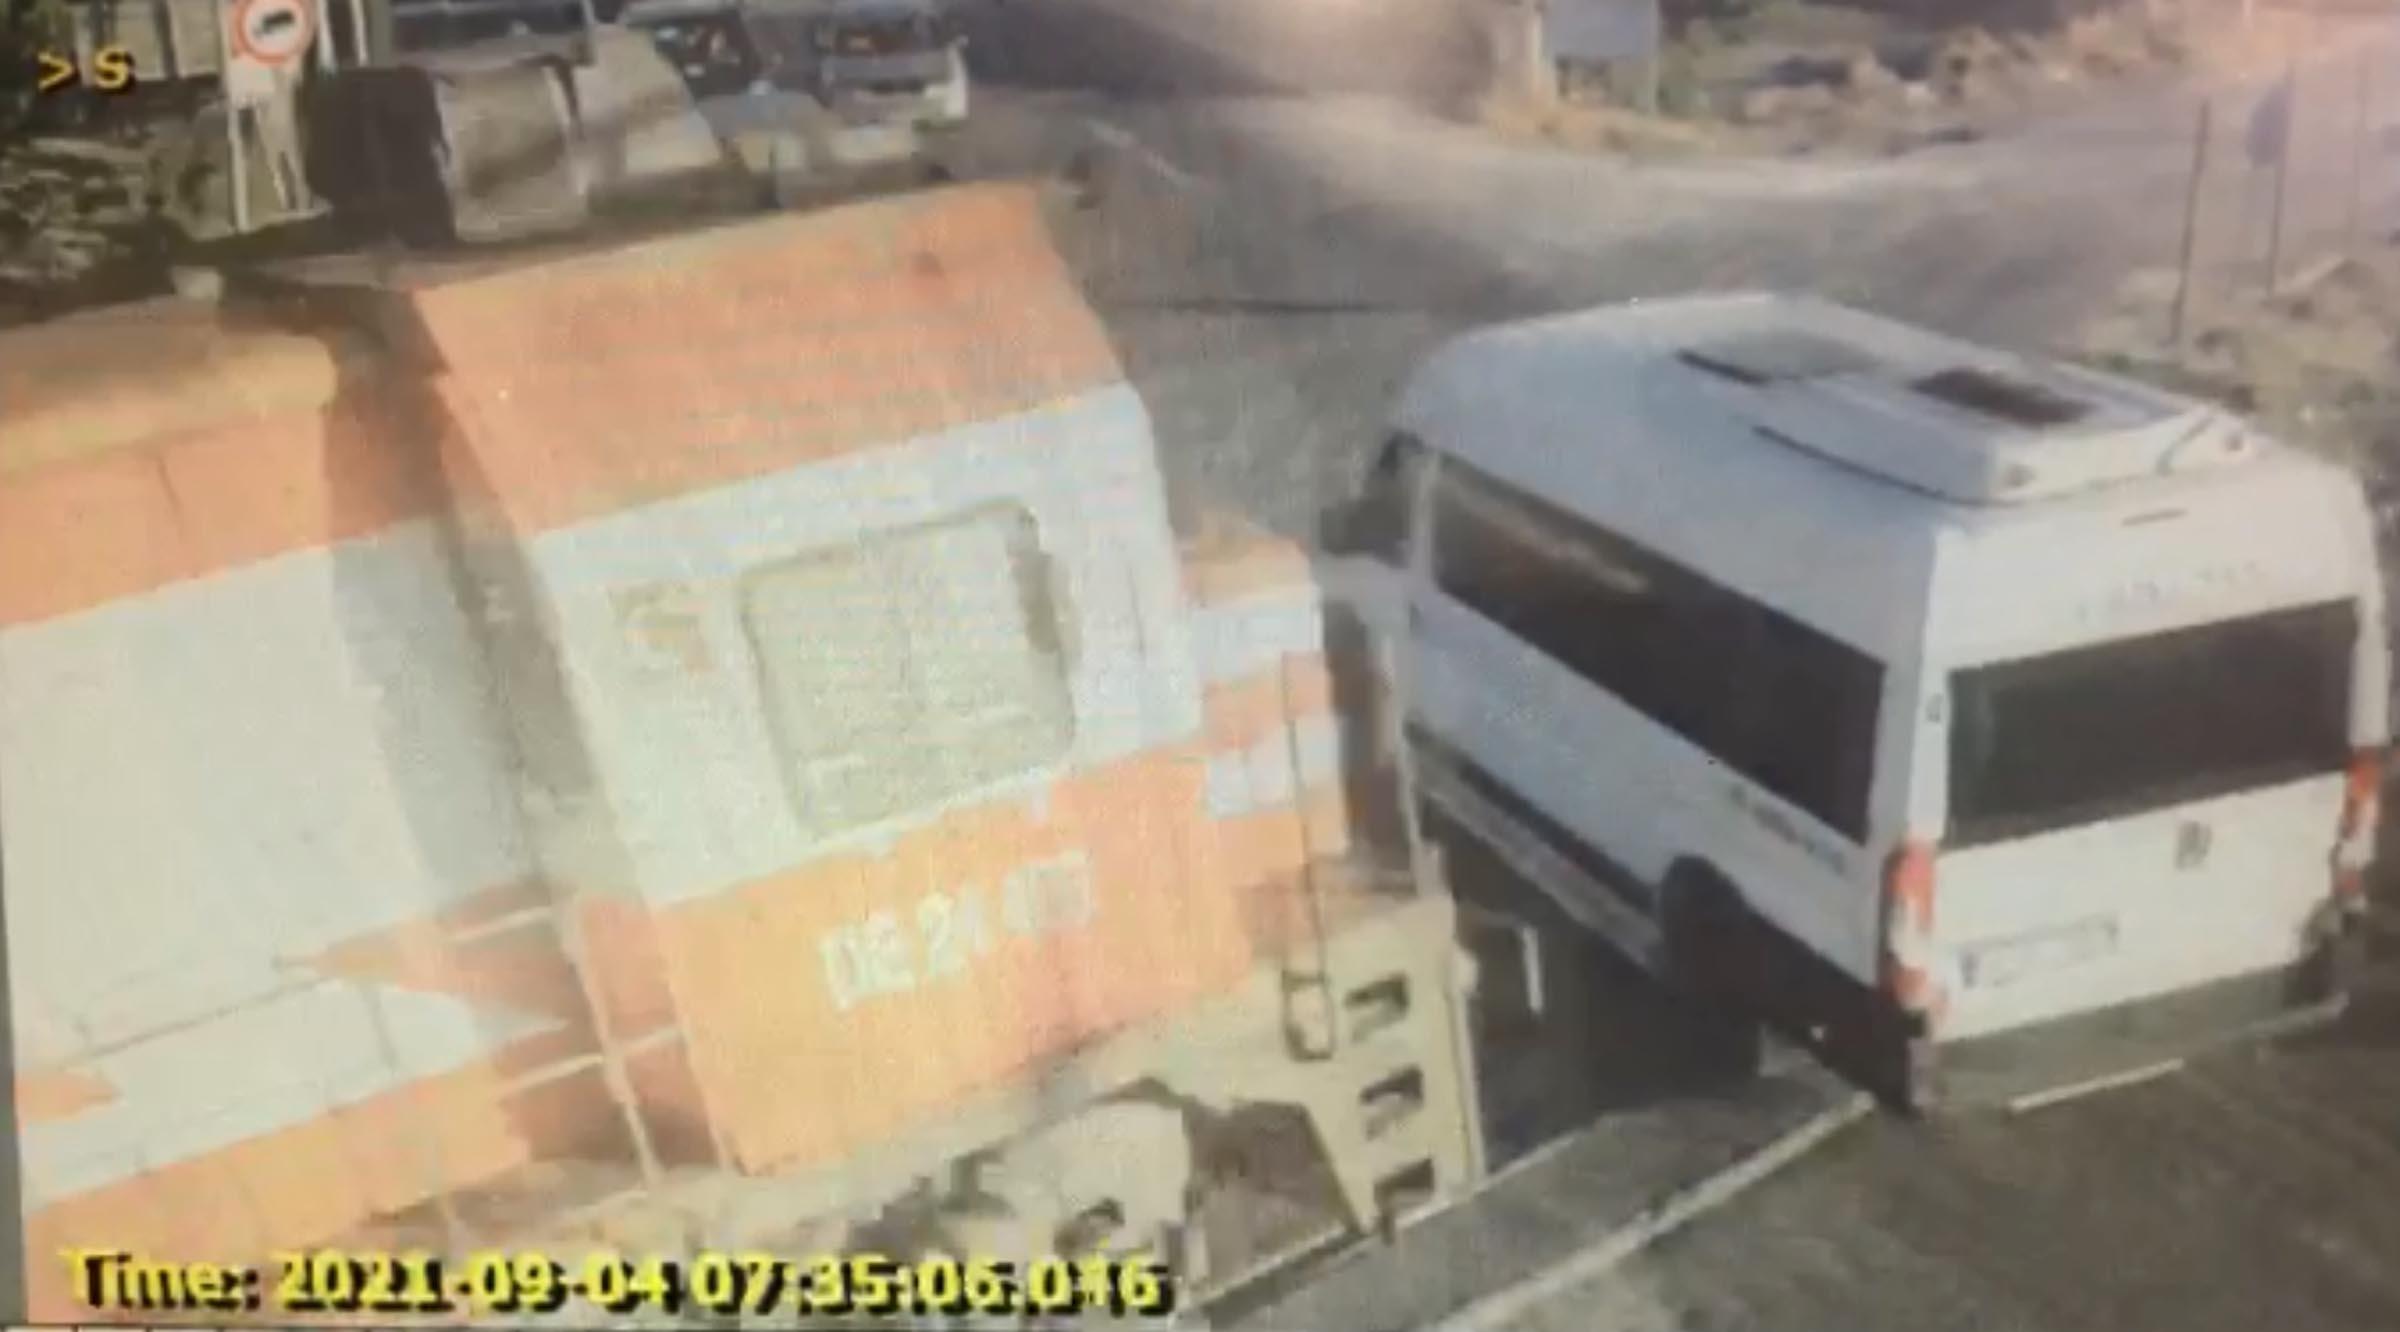 Yük treni, hemzemin geçitte servis minibüsüne çarptı: 6 ölü, 7 yaralı